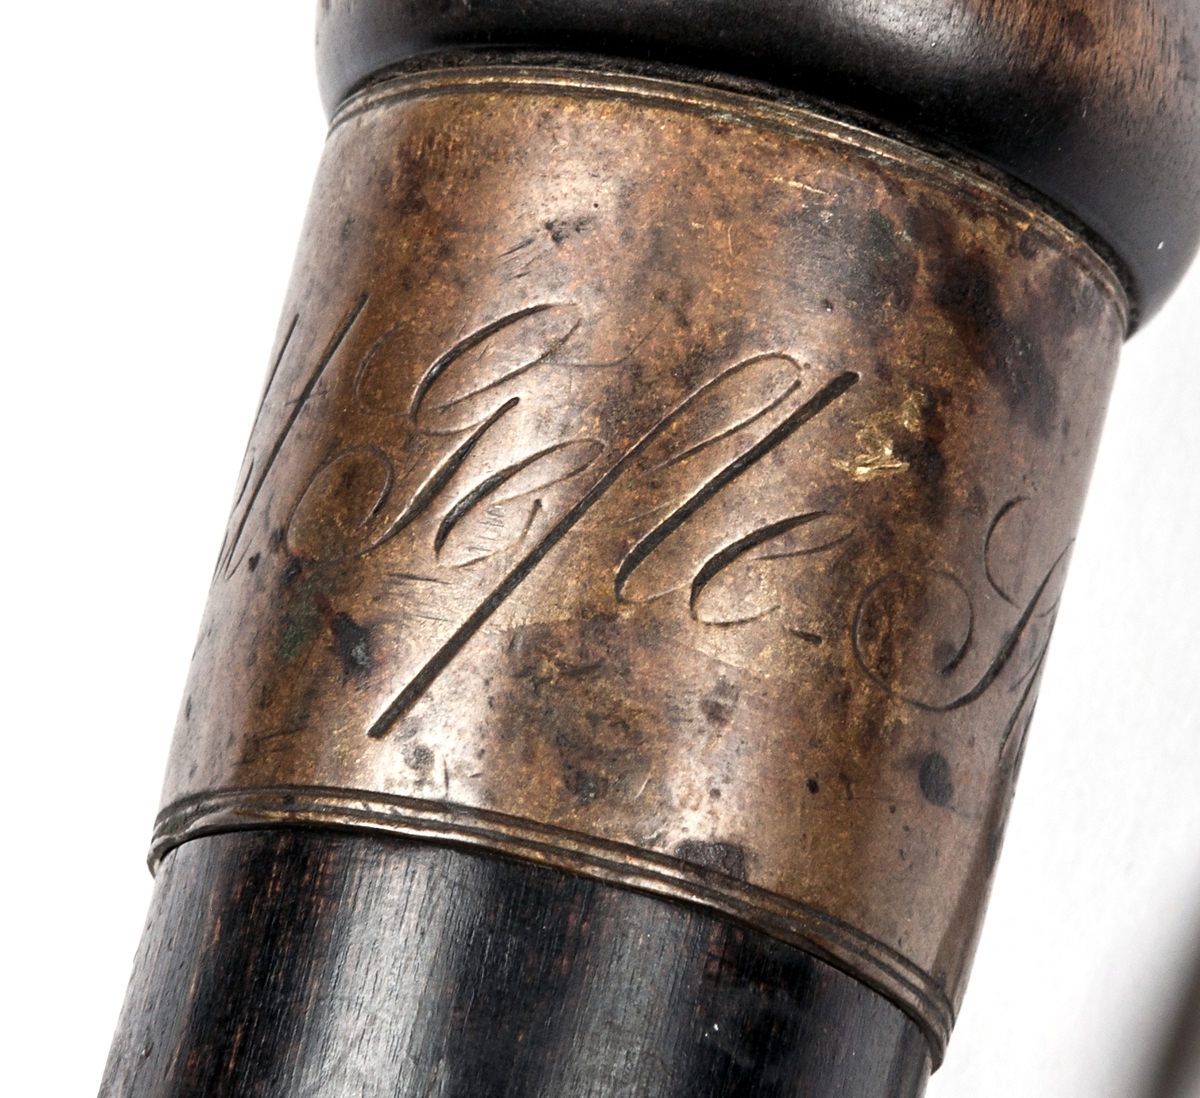 Nattvaktsstav av svartmålat trä, med ring påträdd med texten "Gefle Stads Nattvakt". Käppen är till typen som en spatserkäpp med avlång knopp till handtag. I genomborrat hål är genomdragen en lädergla. Doppsko saknas.